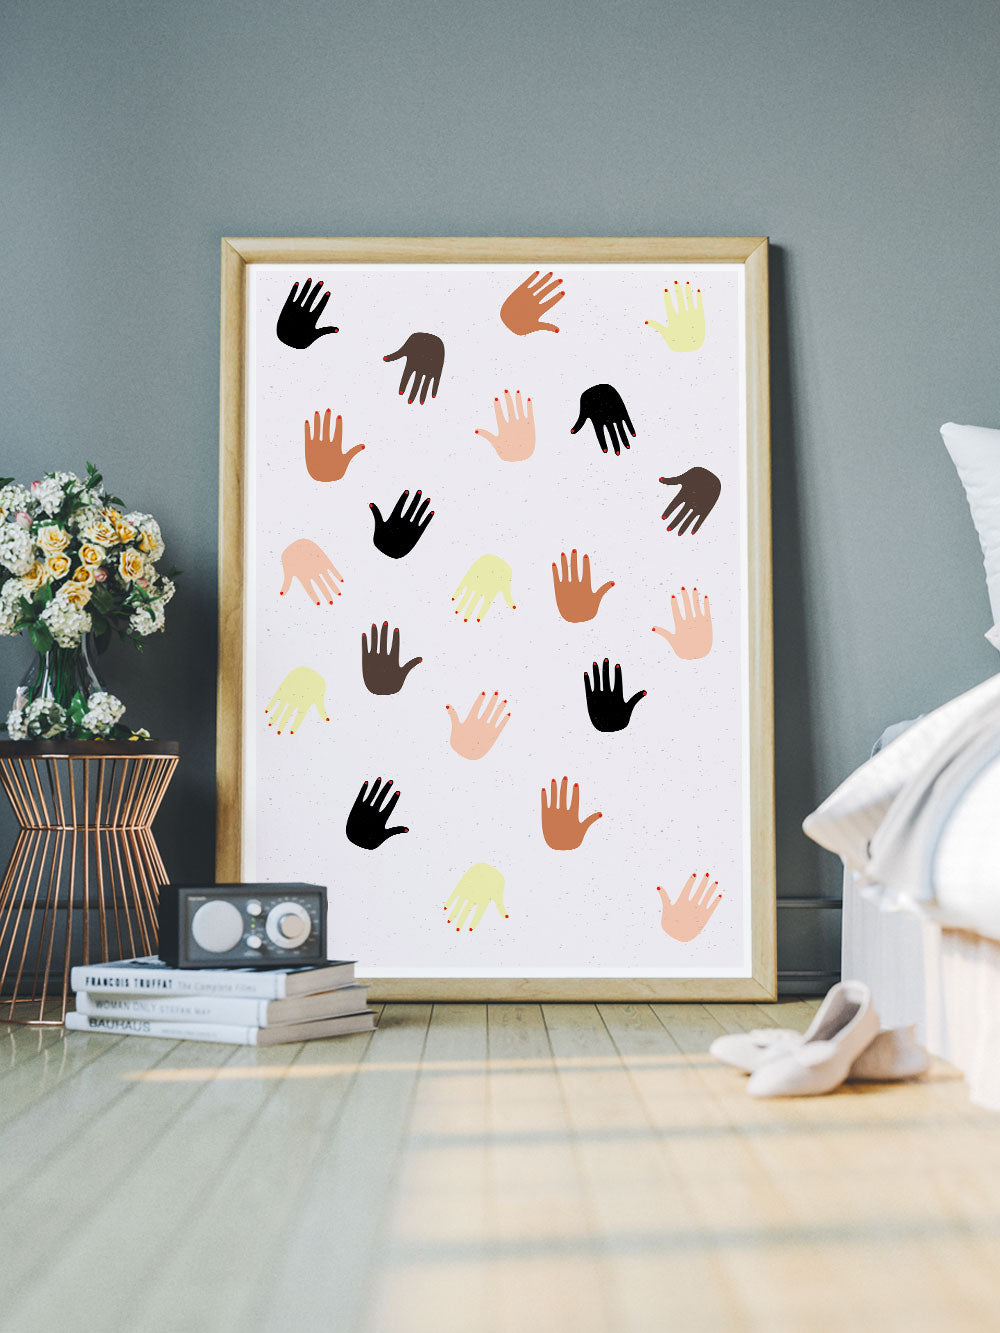 Together Hands Print Illustration in a bedroom